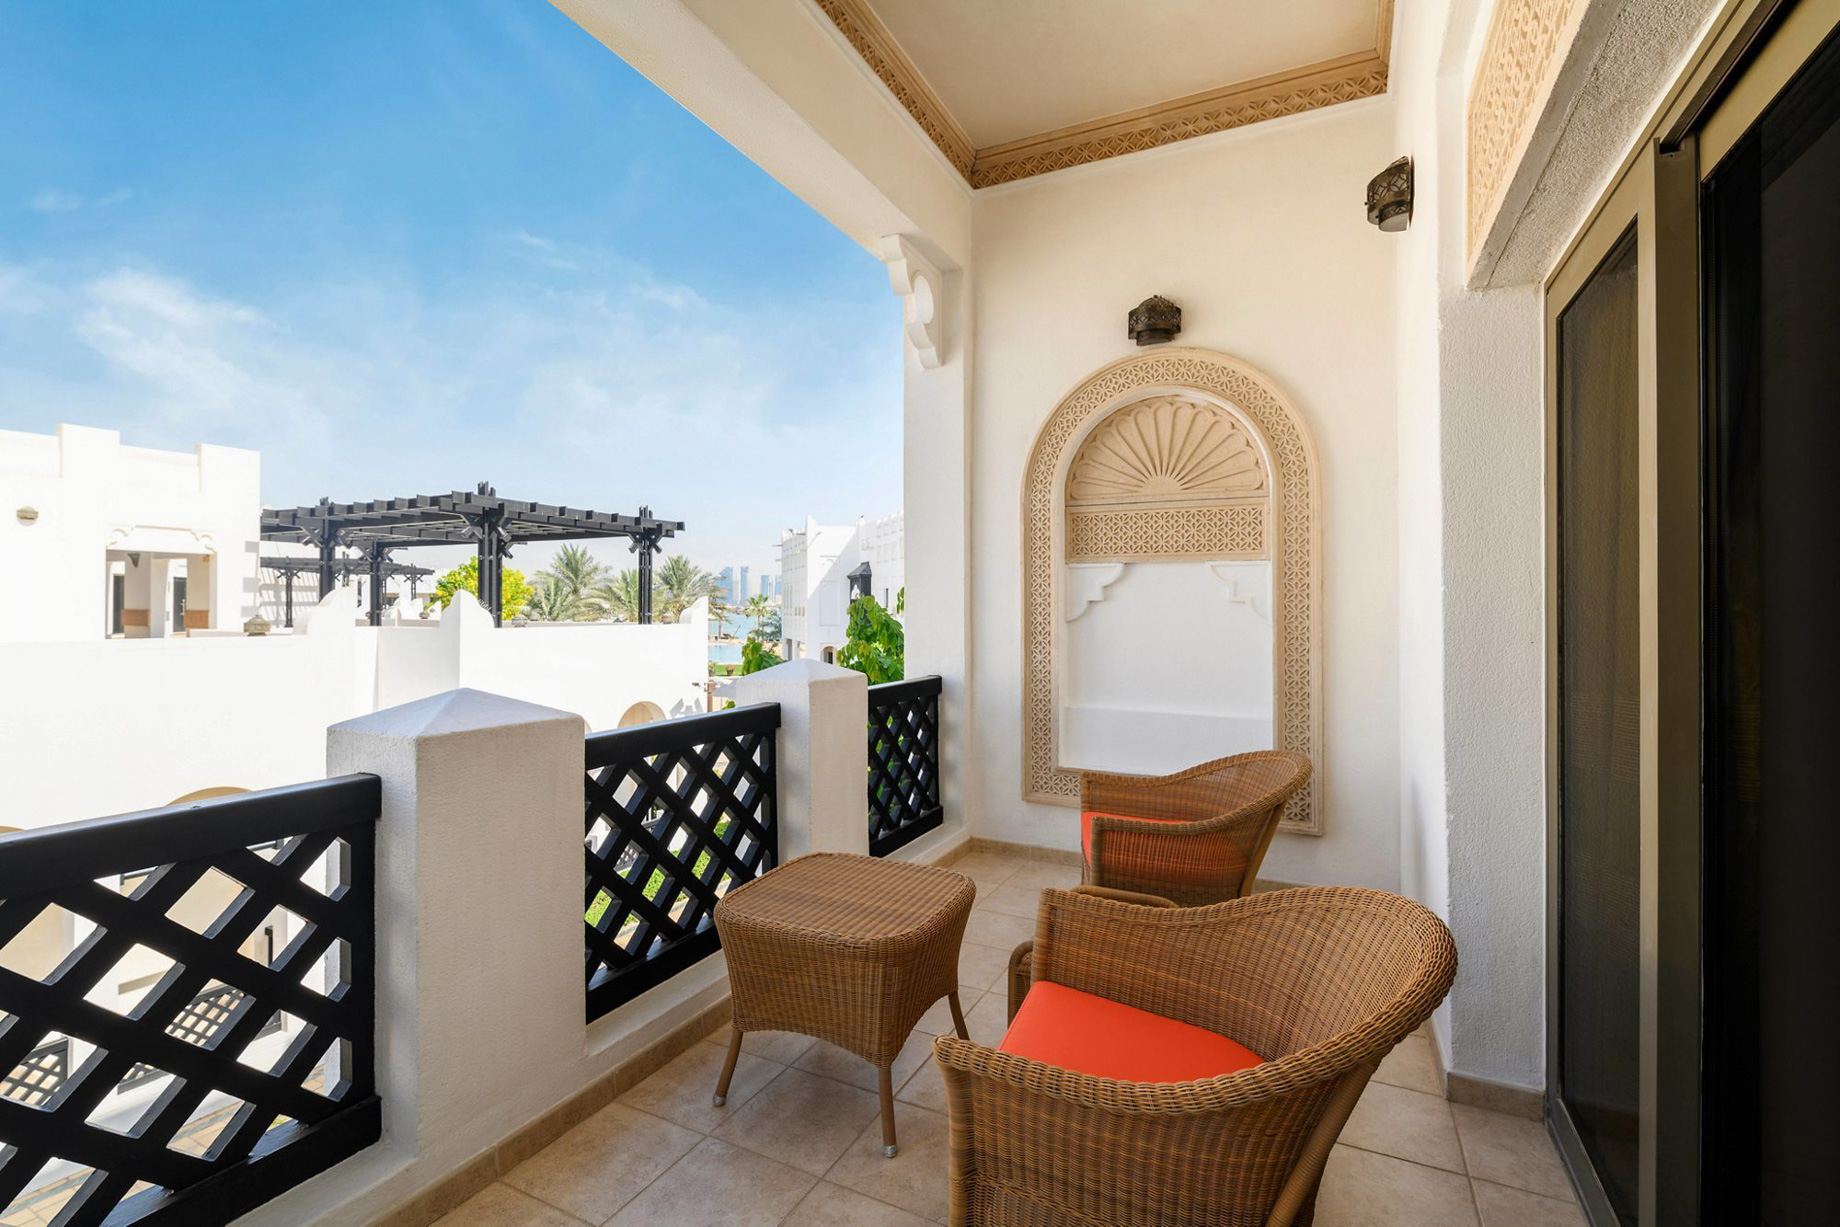 Sharq Village & Spa, A Ritz-Carlton Hotel – Doha, Qatar – Guest Balcony View